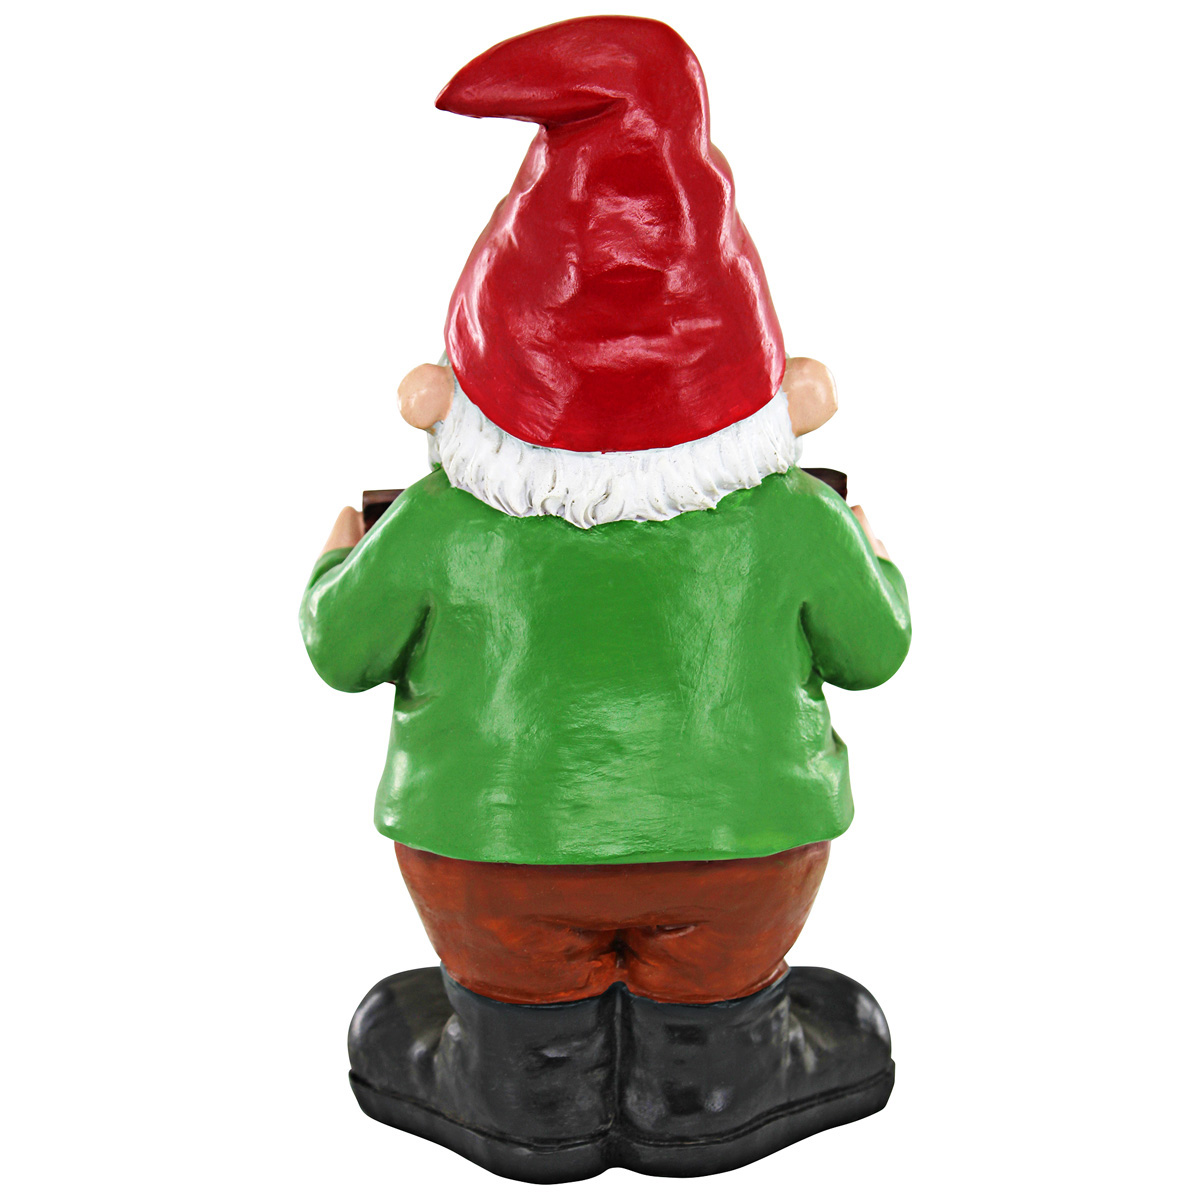 Picture 5 for Mr Bad Attitude "Go Away" Gnome Statue